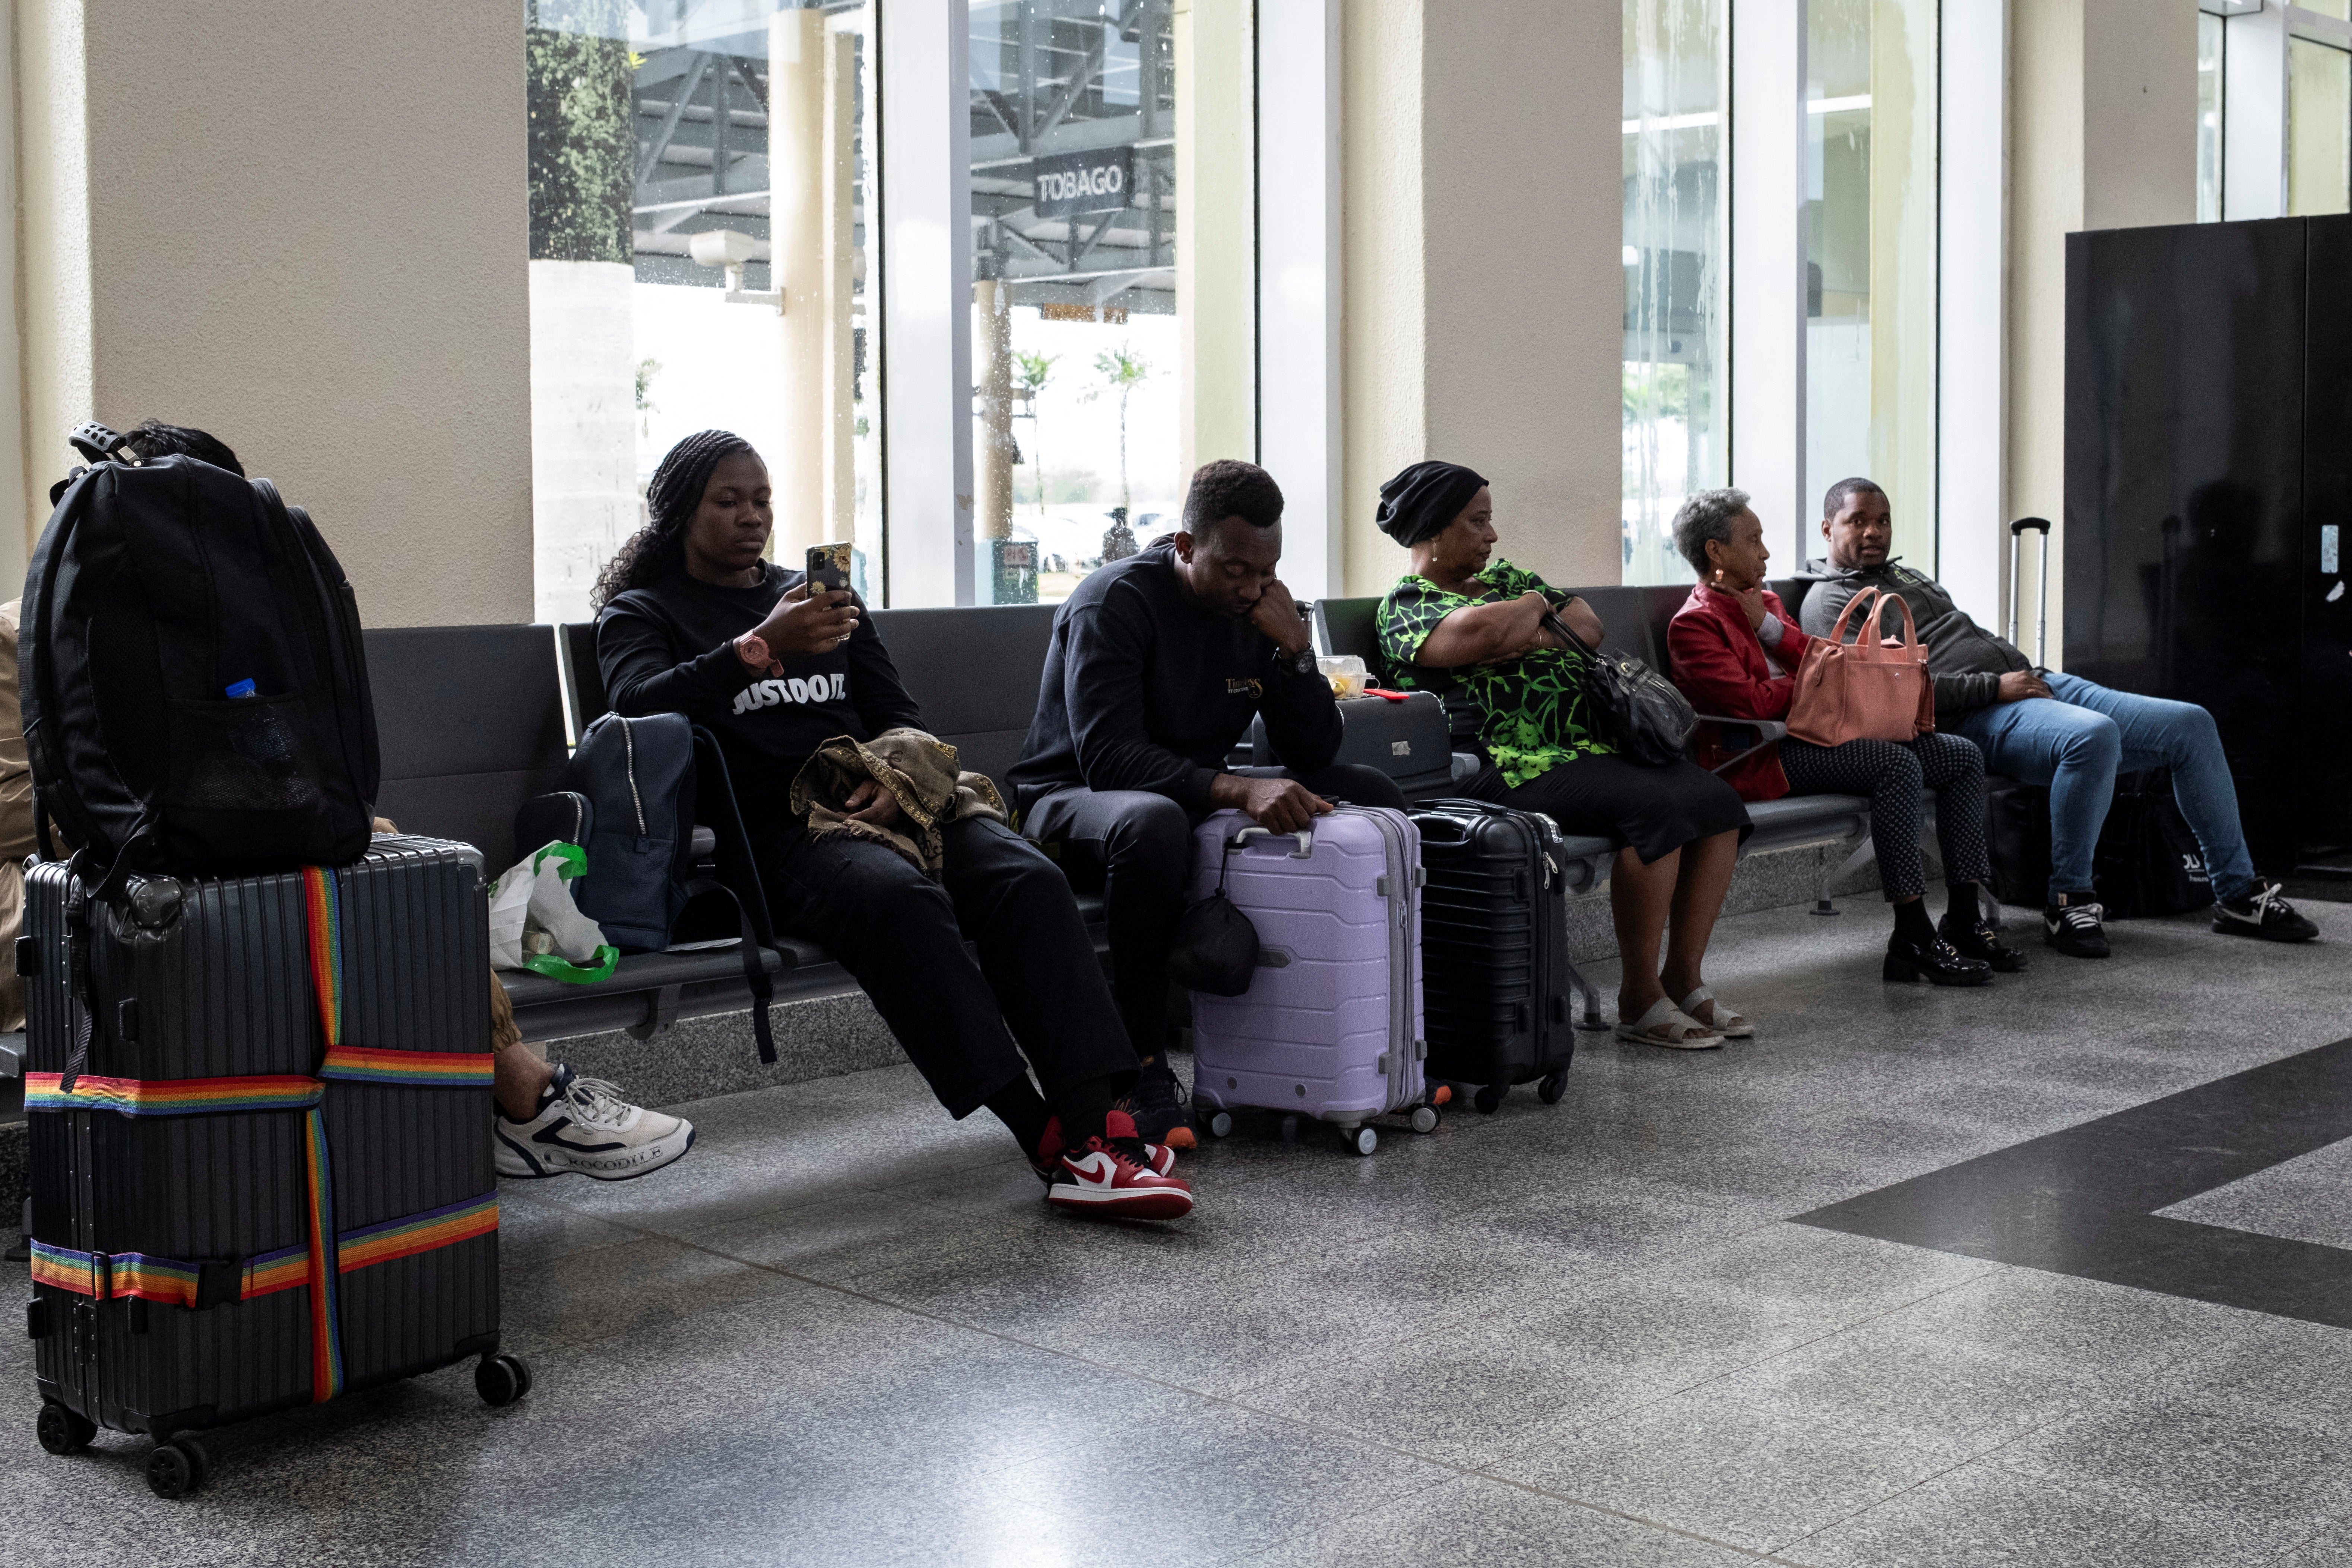 المسافرون ينتظرون في مطار بياركو الدولي حيث تأخرت الرحلات الجوية وألغيت بسبب إعصار بيريل